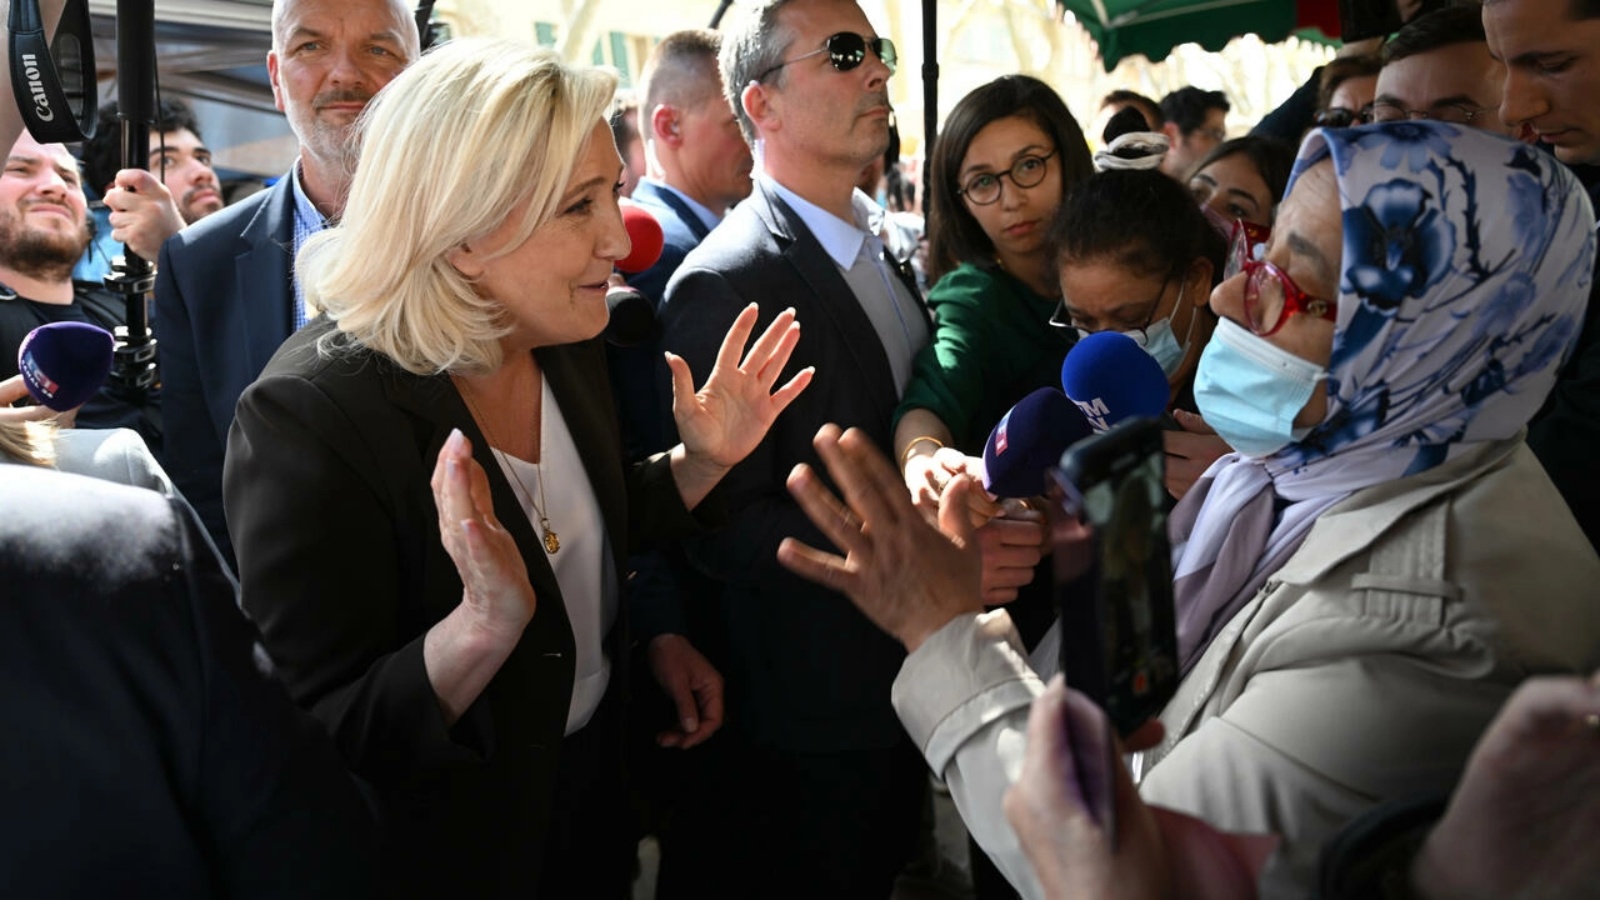 مرشحة اليمين المتطرف مارين لوبن في حوار مع امرأة مسلمة محجبة